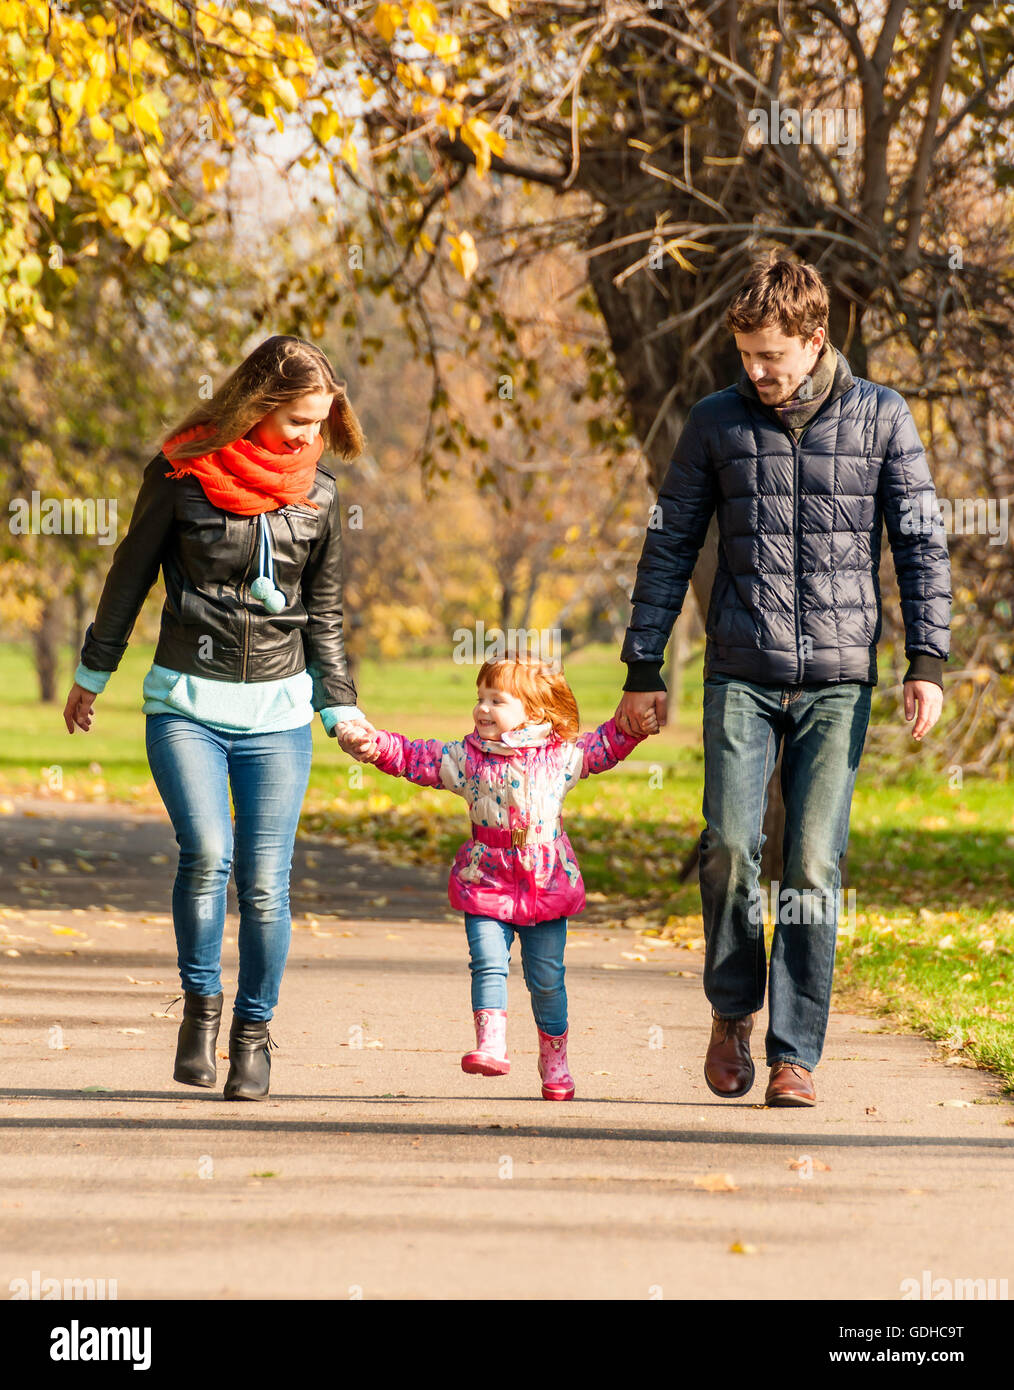 Я с мамой и папой сегодня иду. Семья на прогулке в парке. Прогулка в парке с детьми. Мама с ребенком на прогулке. Родители с детьми гуляют в парке.